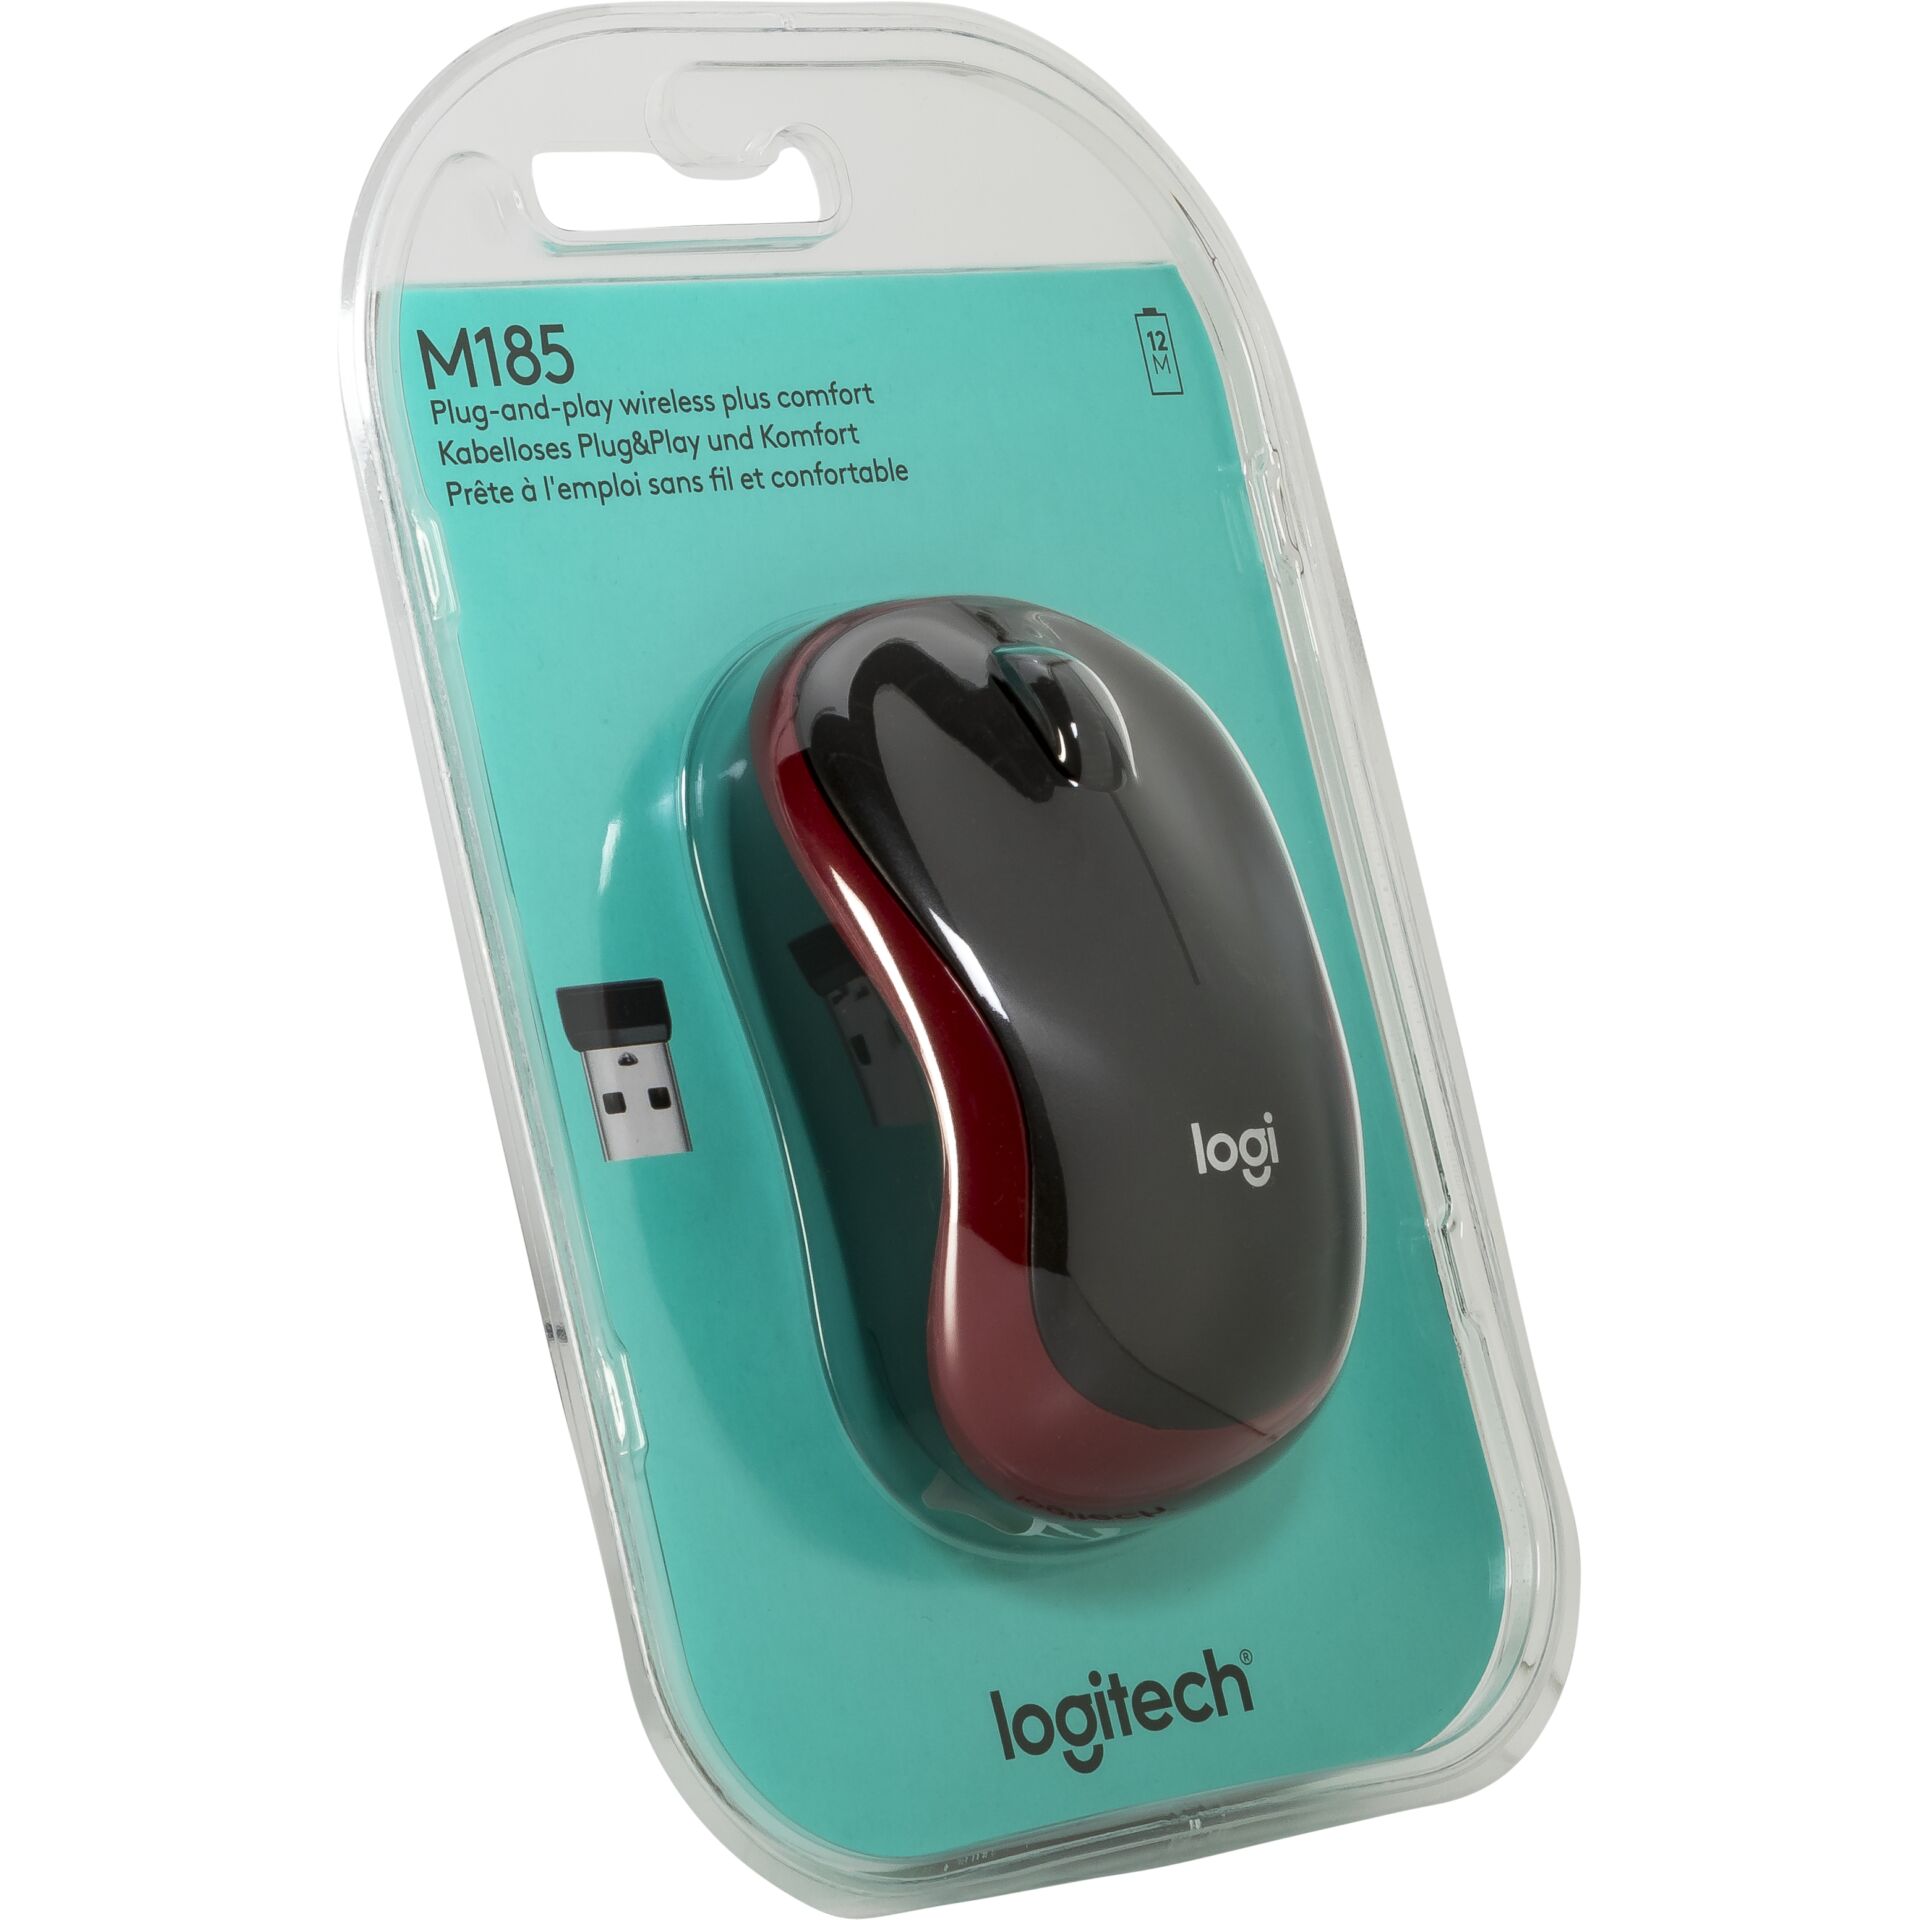 günstig Logitech bei M185 USB Wireless Maus rot